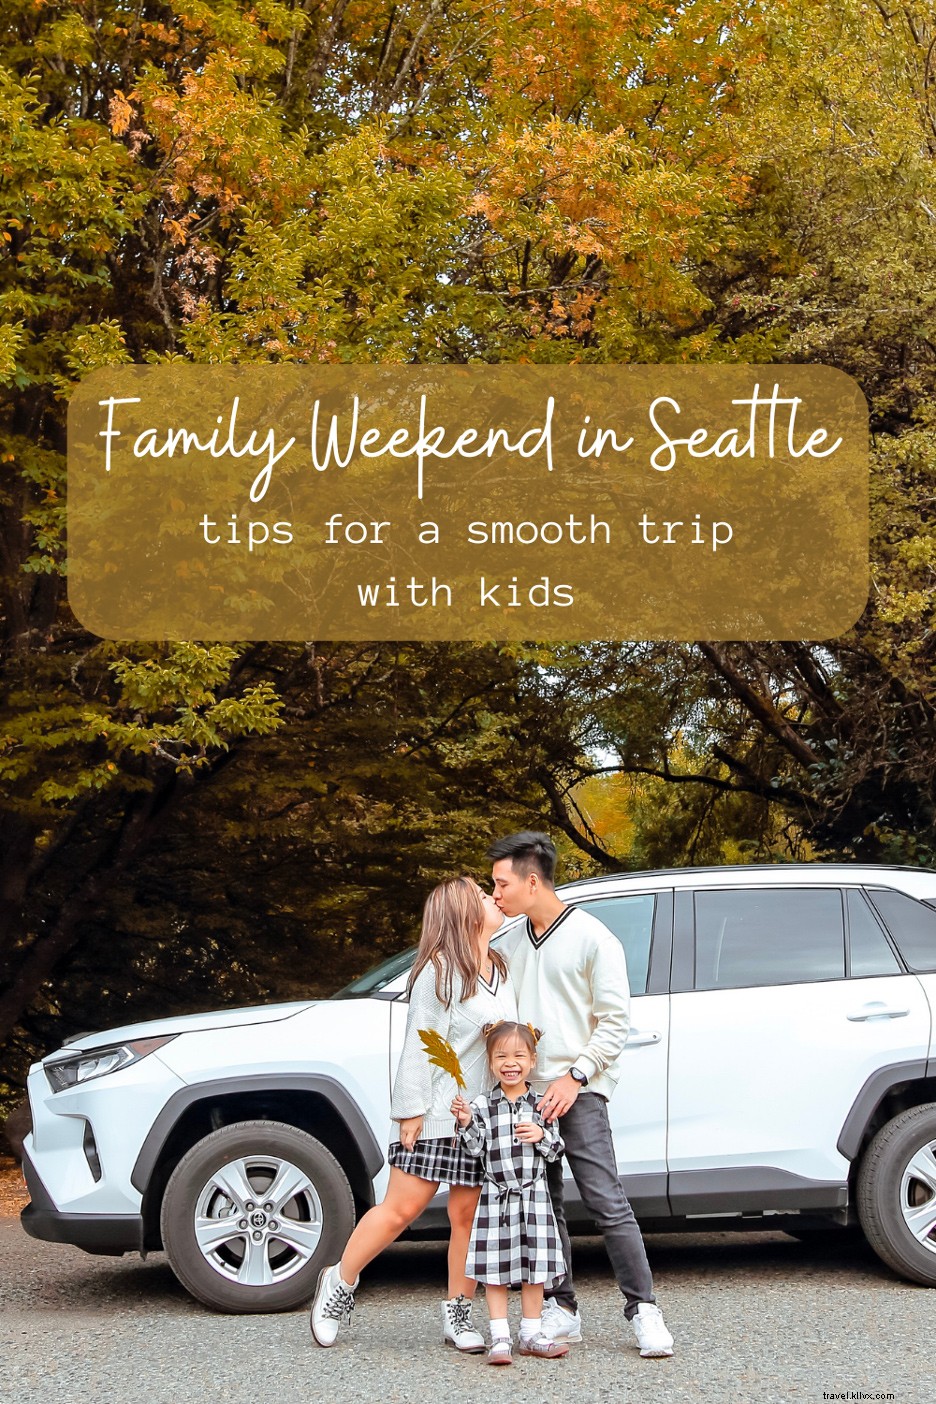 Week-end en famille à Seattle :plus de conseils pour un voyage en douceur avec les enfants 